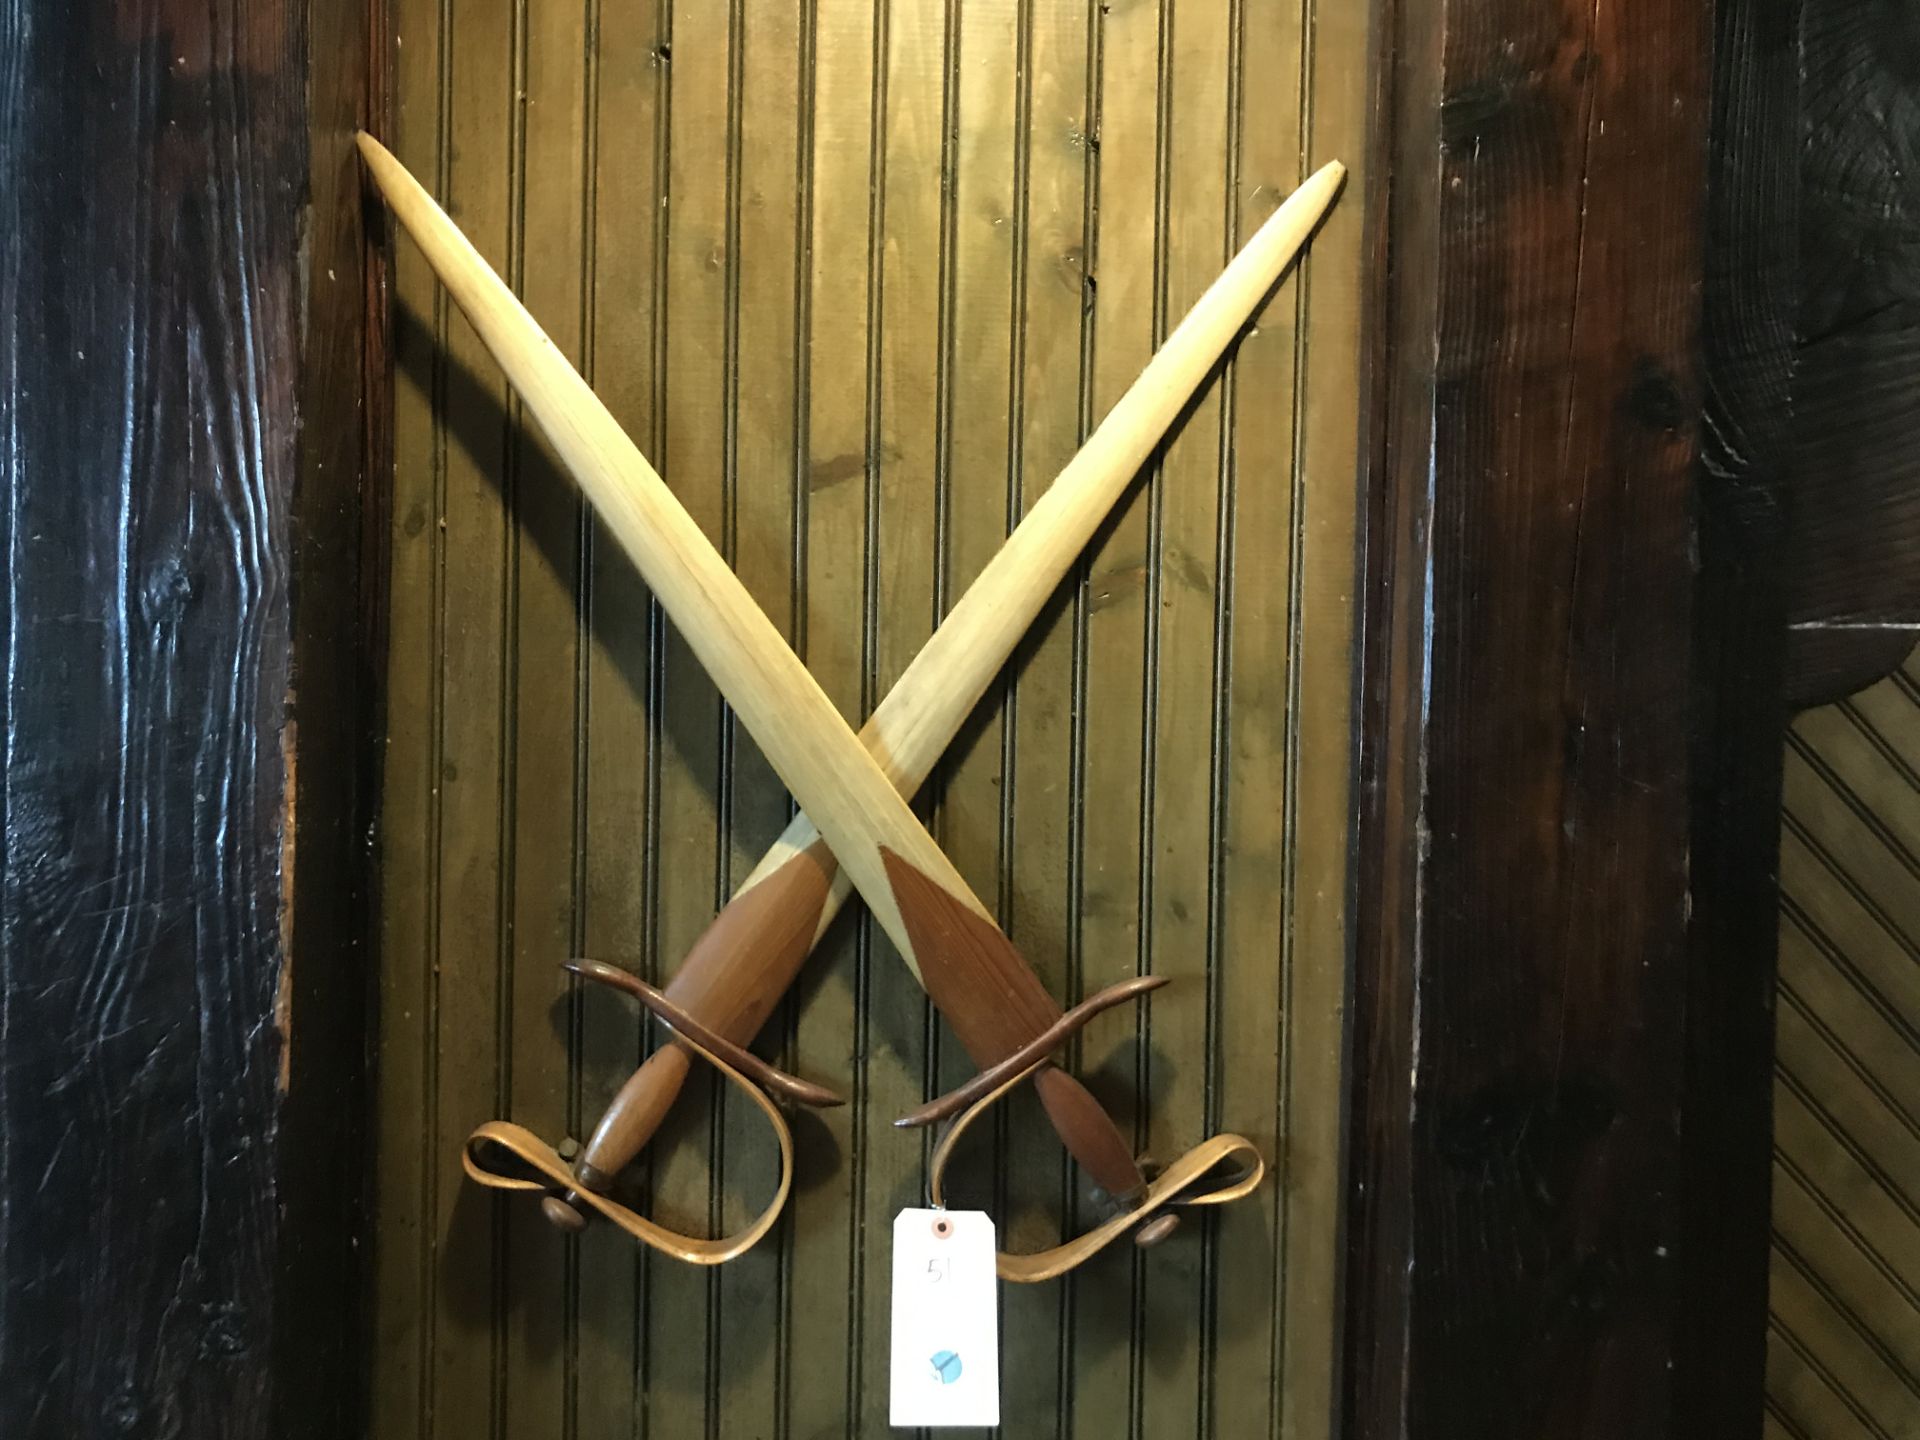 Wooden Crossed Swords